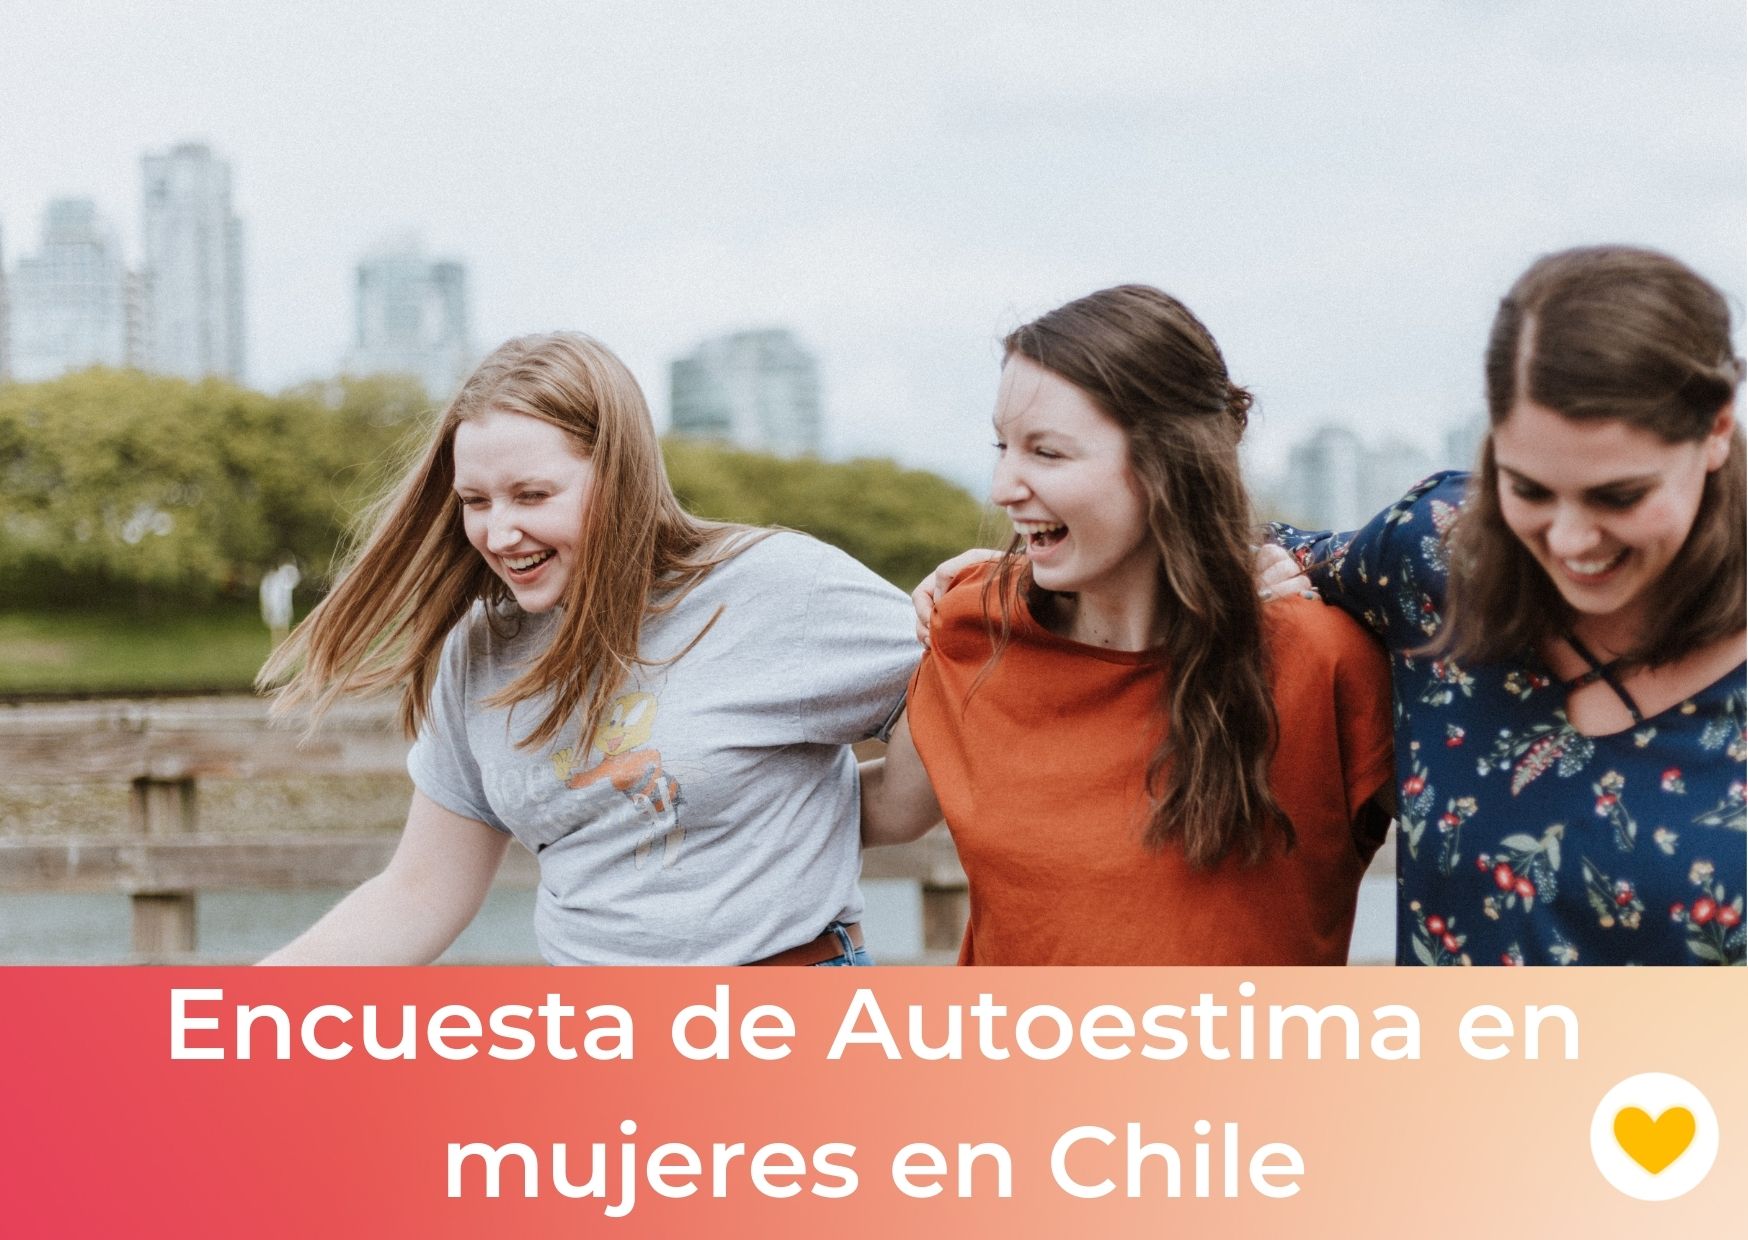 Primera encuesta de Autoestima en mujeres en Chile